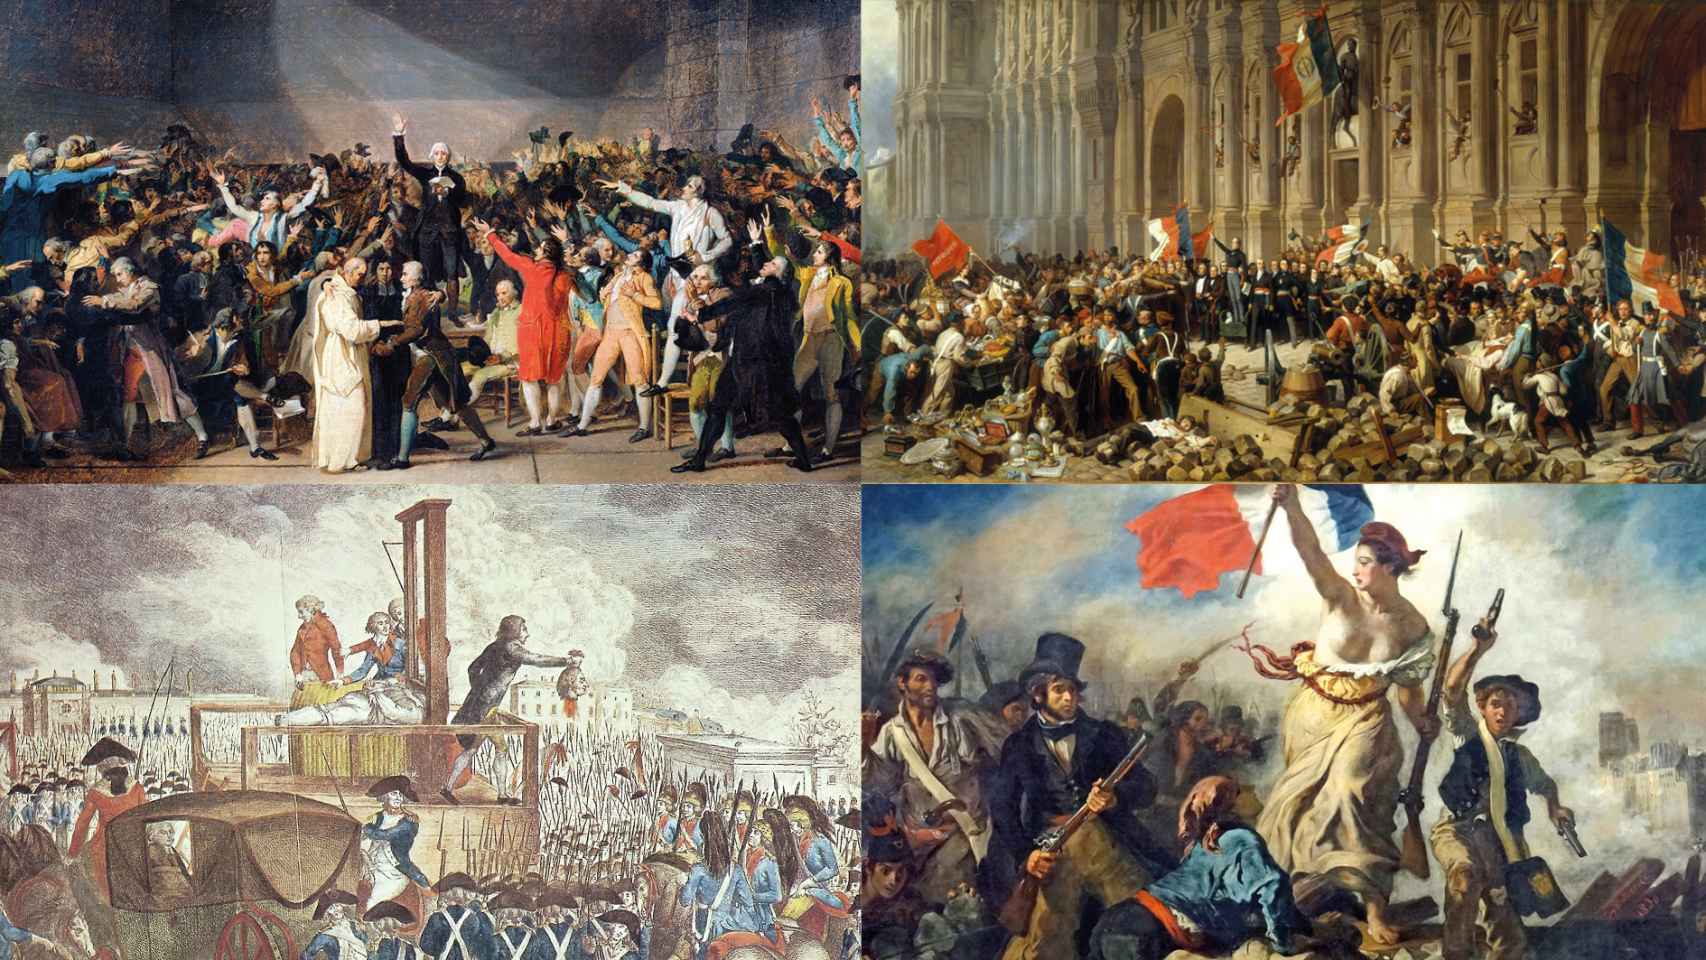 Revolución francesa.